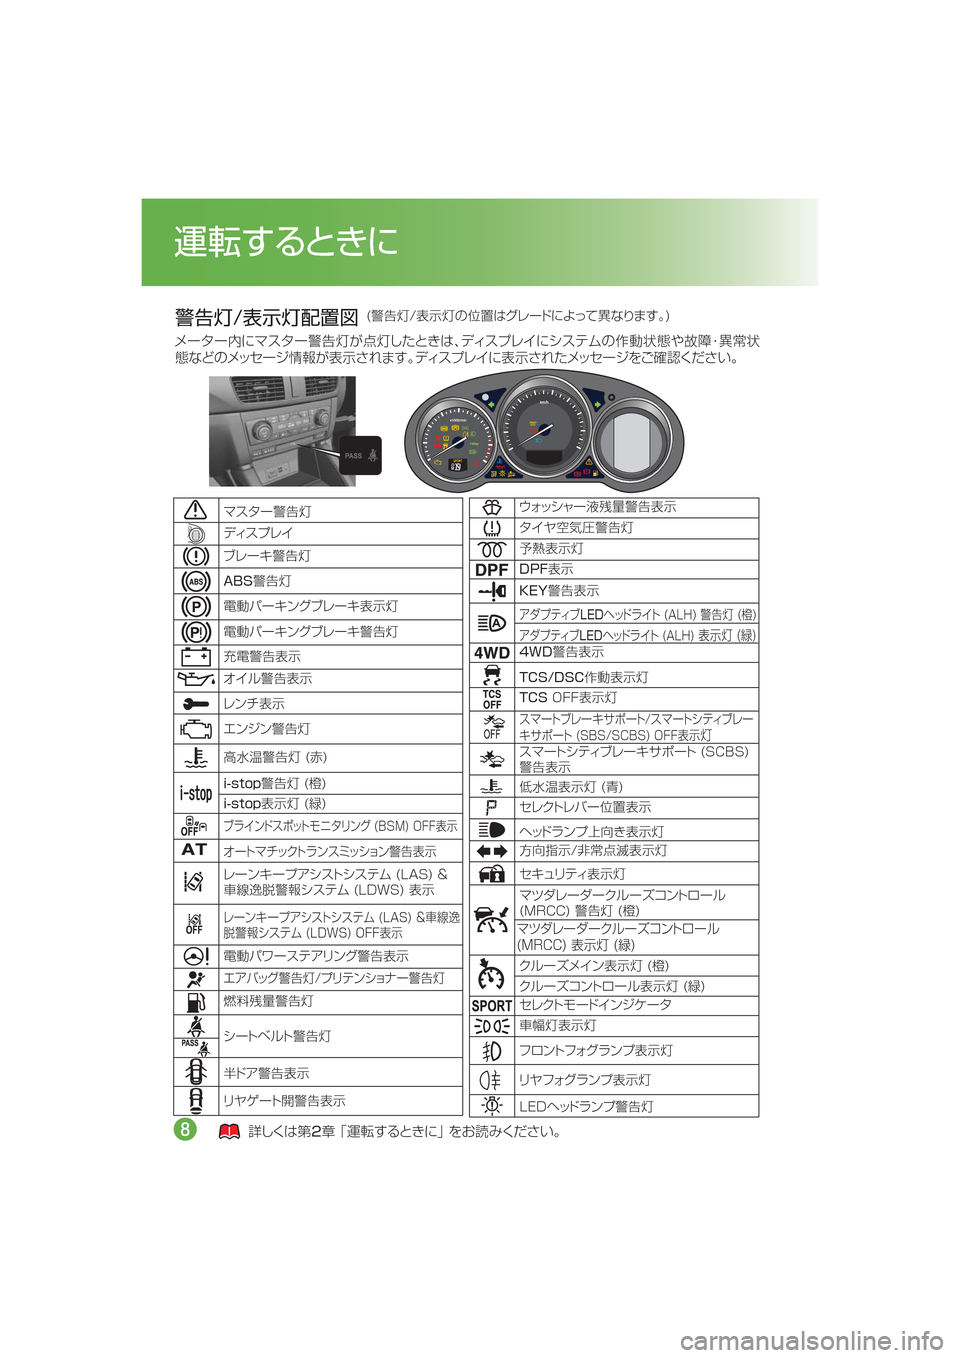 MAZDA MODEL CX-5 2015  取扱説明書 (in Japanese) /n�
¯Ôn
”
$
ÃŸµ Óè  
